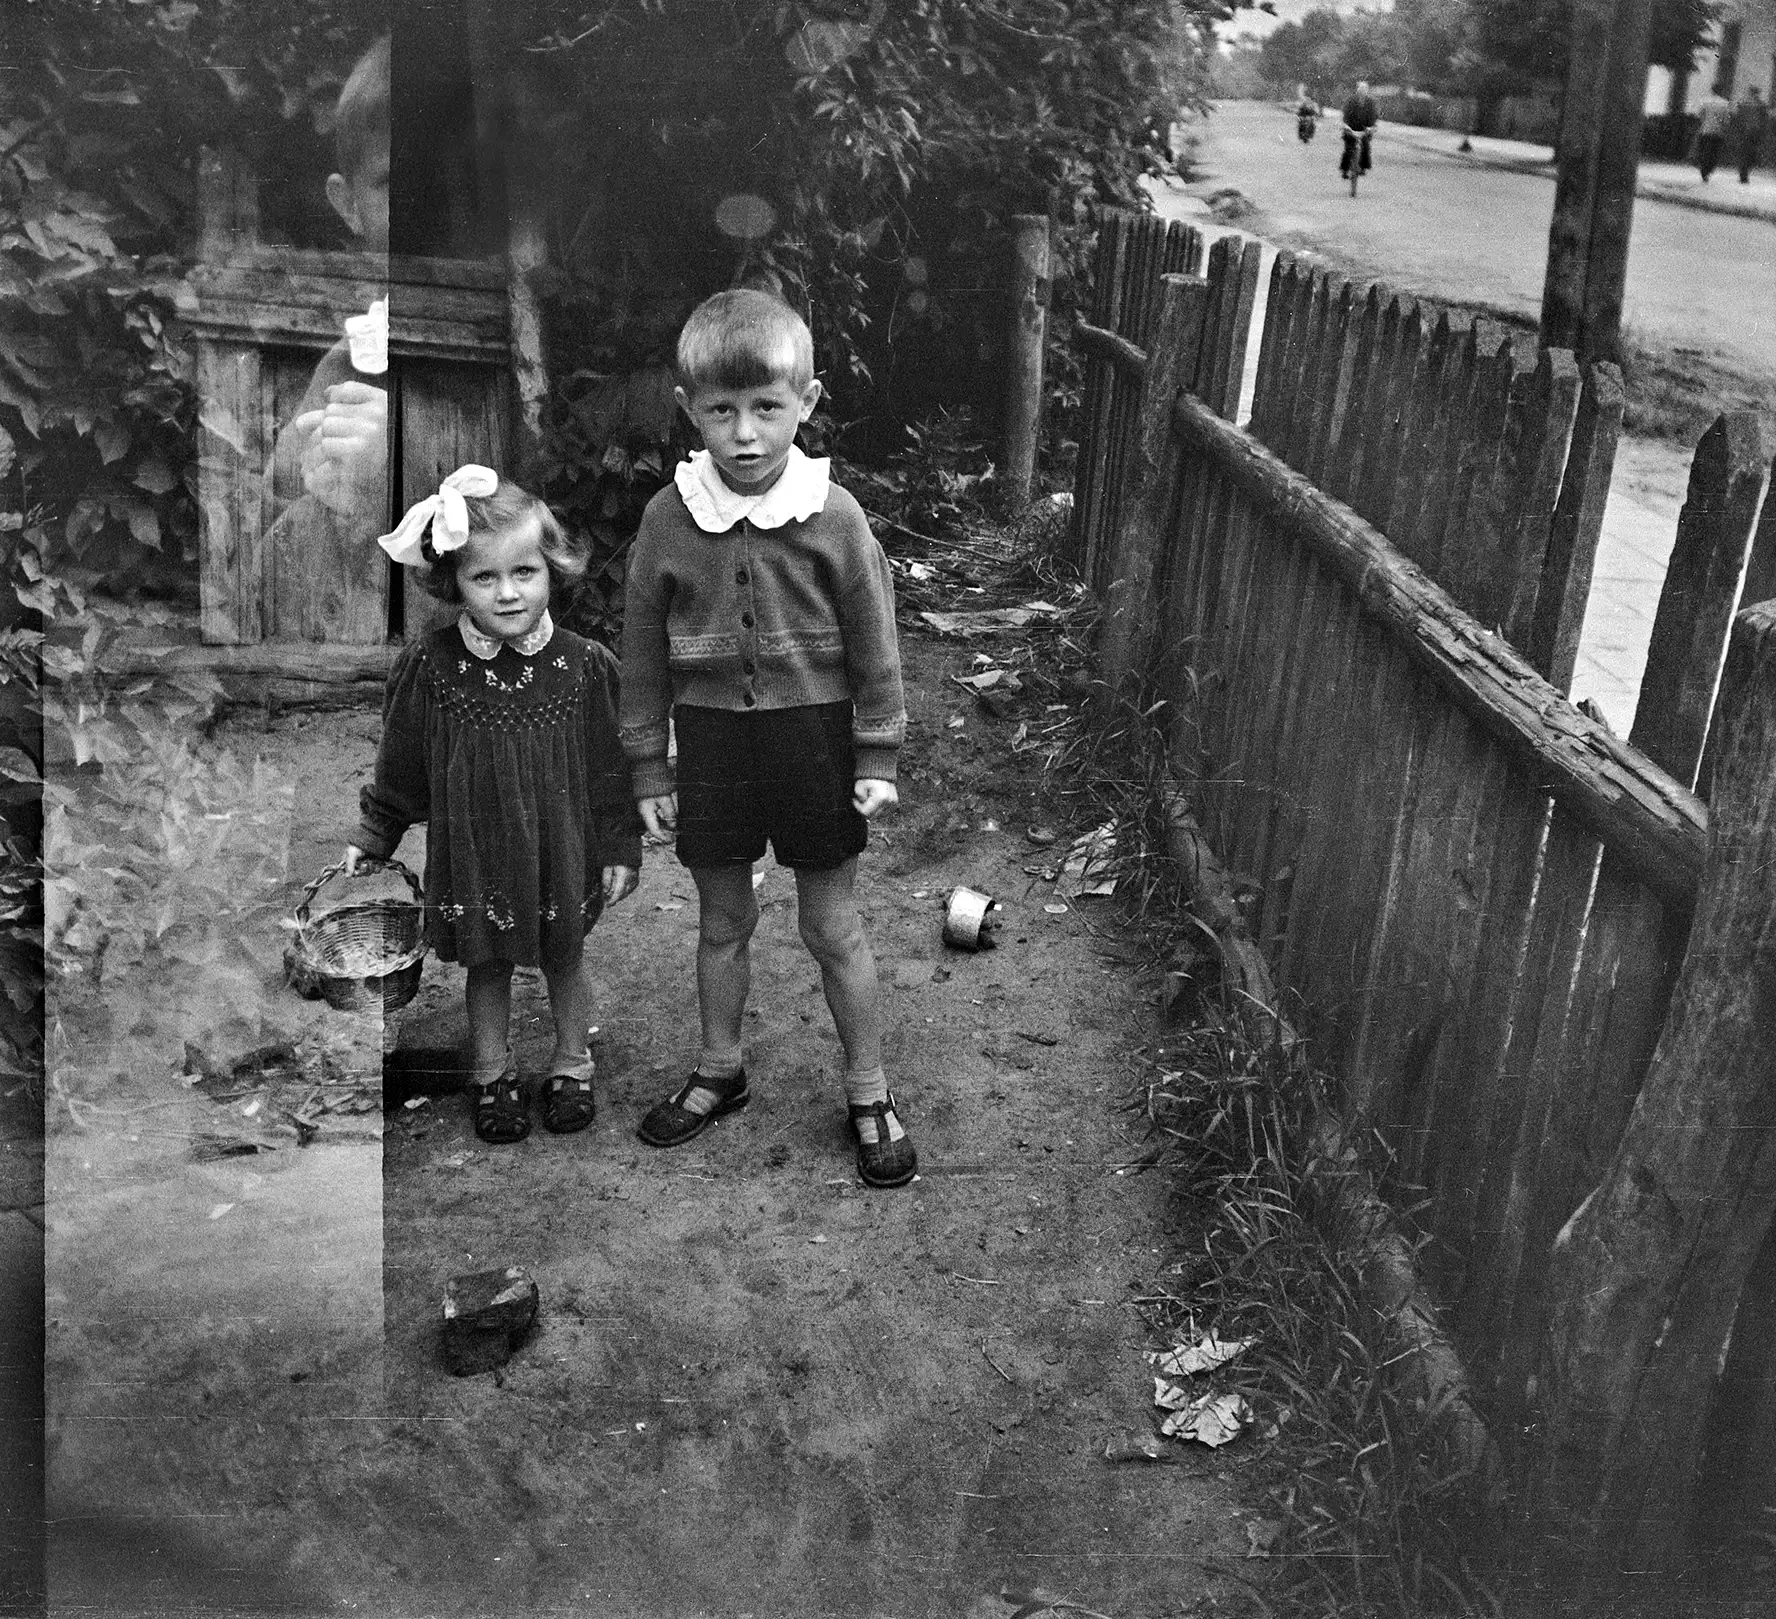 mała dziewczynka z koszyczkiem i mały chłopczyk pozujący na podwórku przy drewnianym płocie. Za płotem widoczna ulica